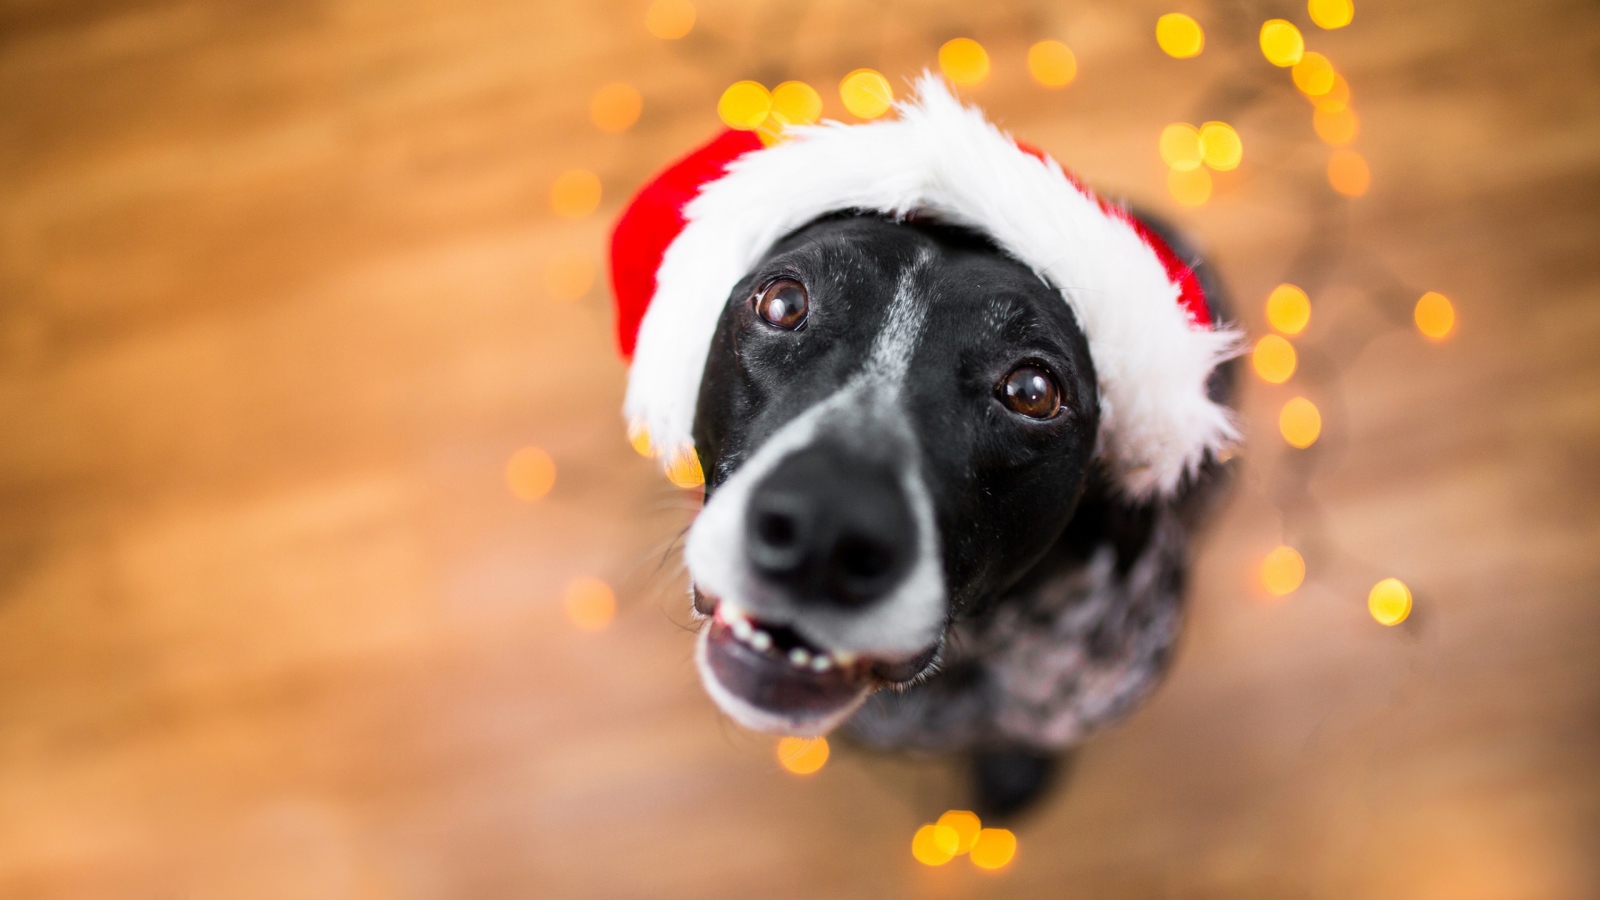 Морда пса в новогодней шапке